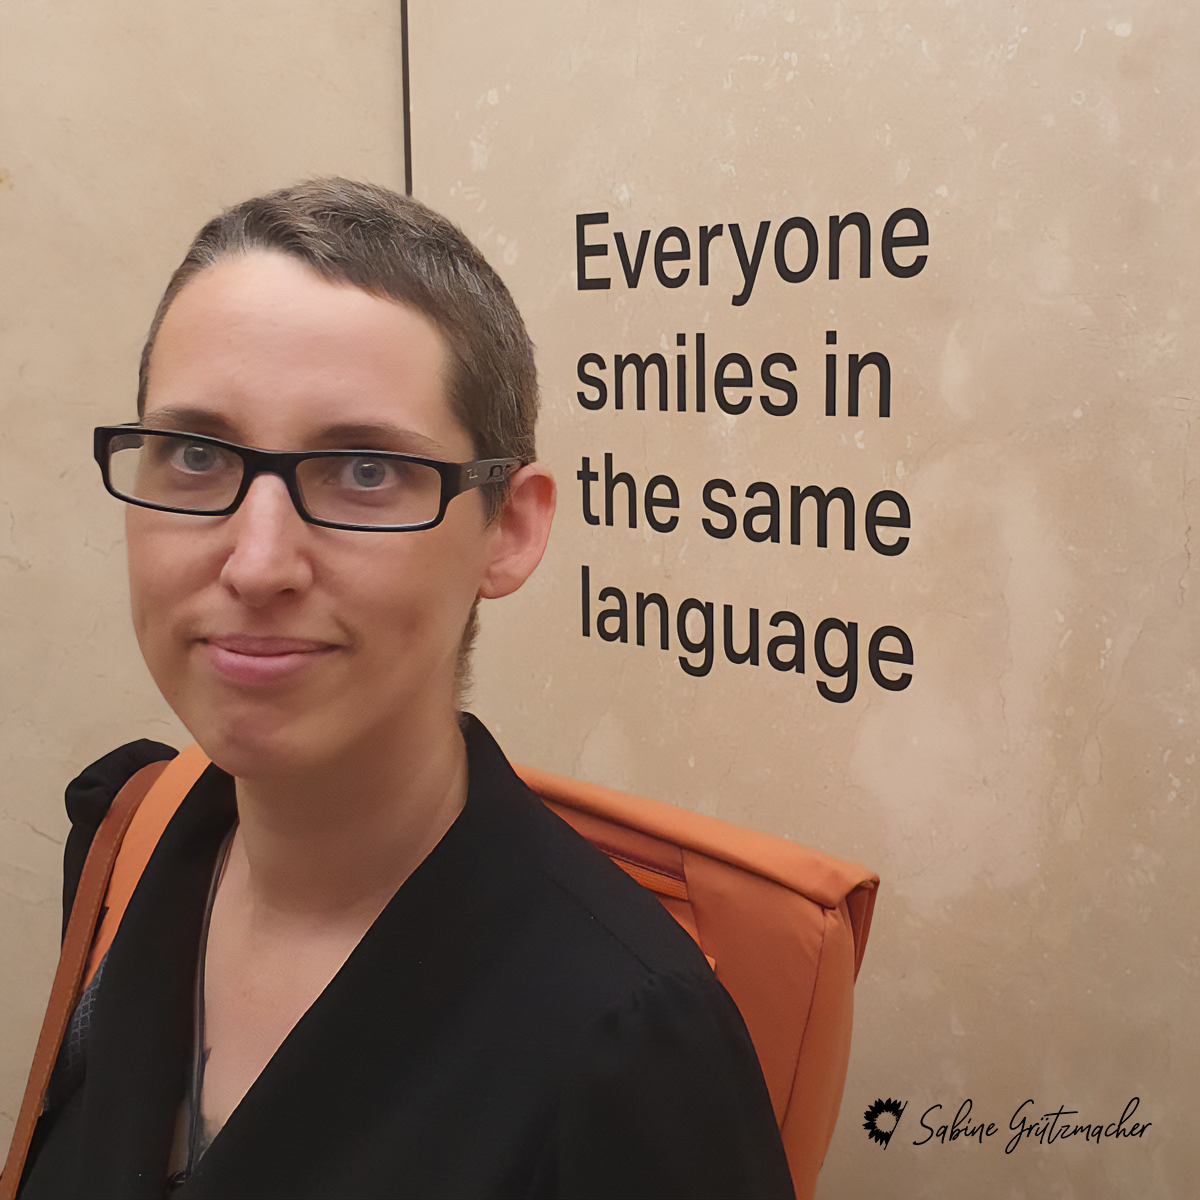 Sabine lächelt. Auf der beige Wand hinter ihr steht geschrieben 'everyone smiles in the same language' (jeder lächelt in derselben Sprache)